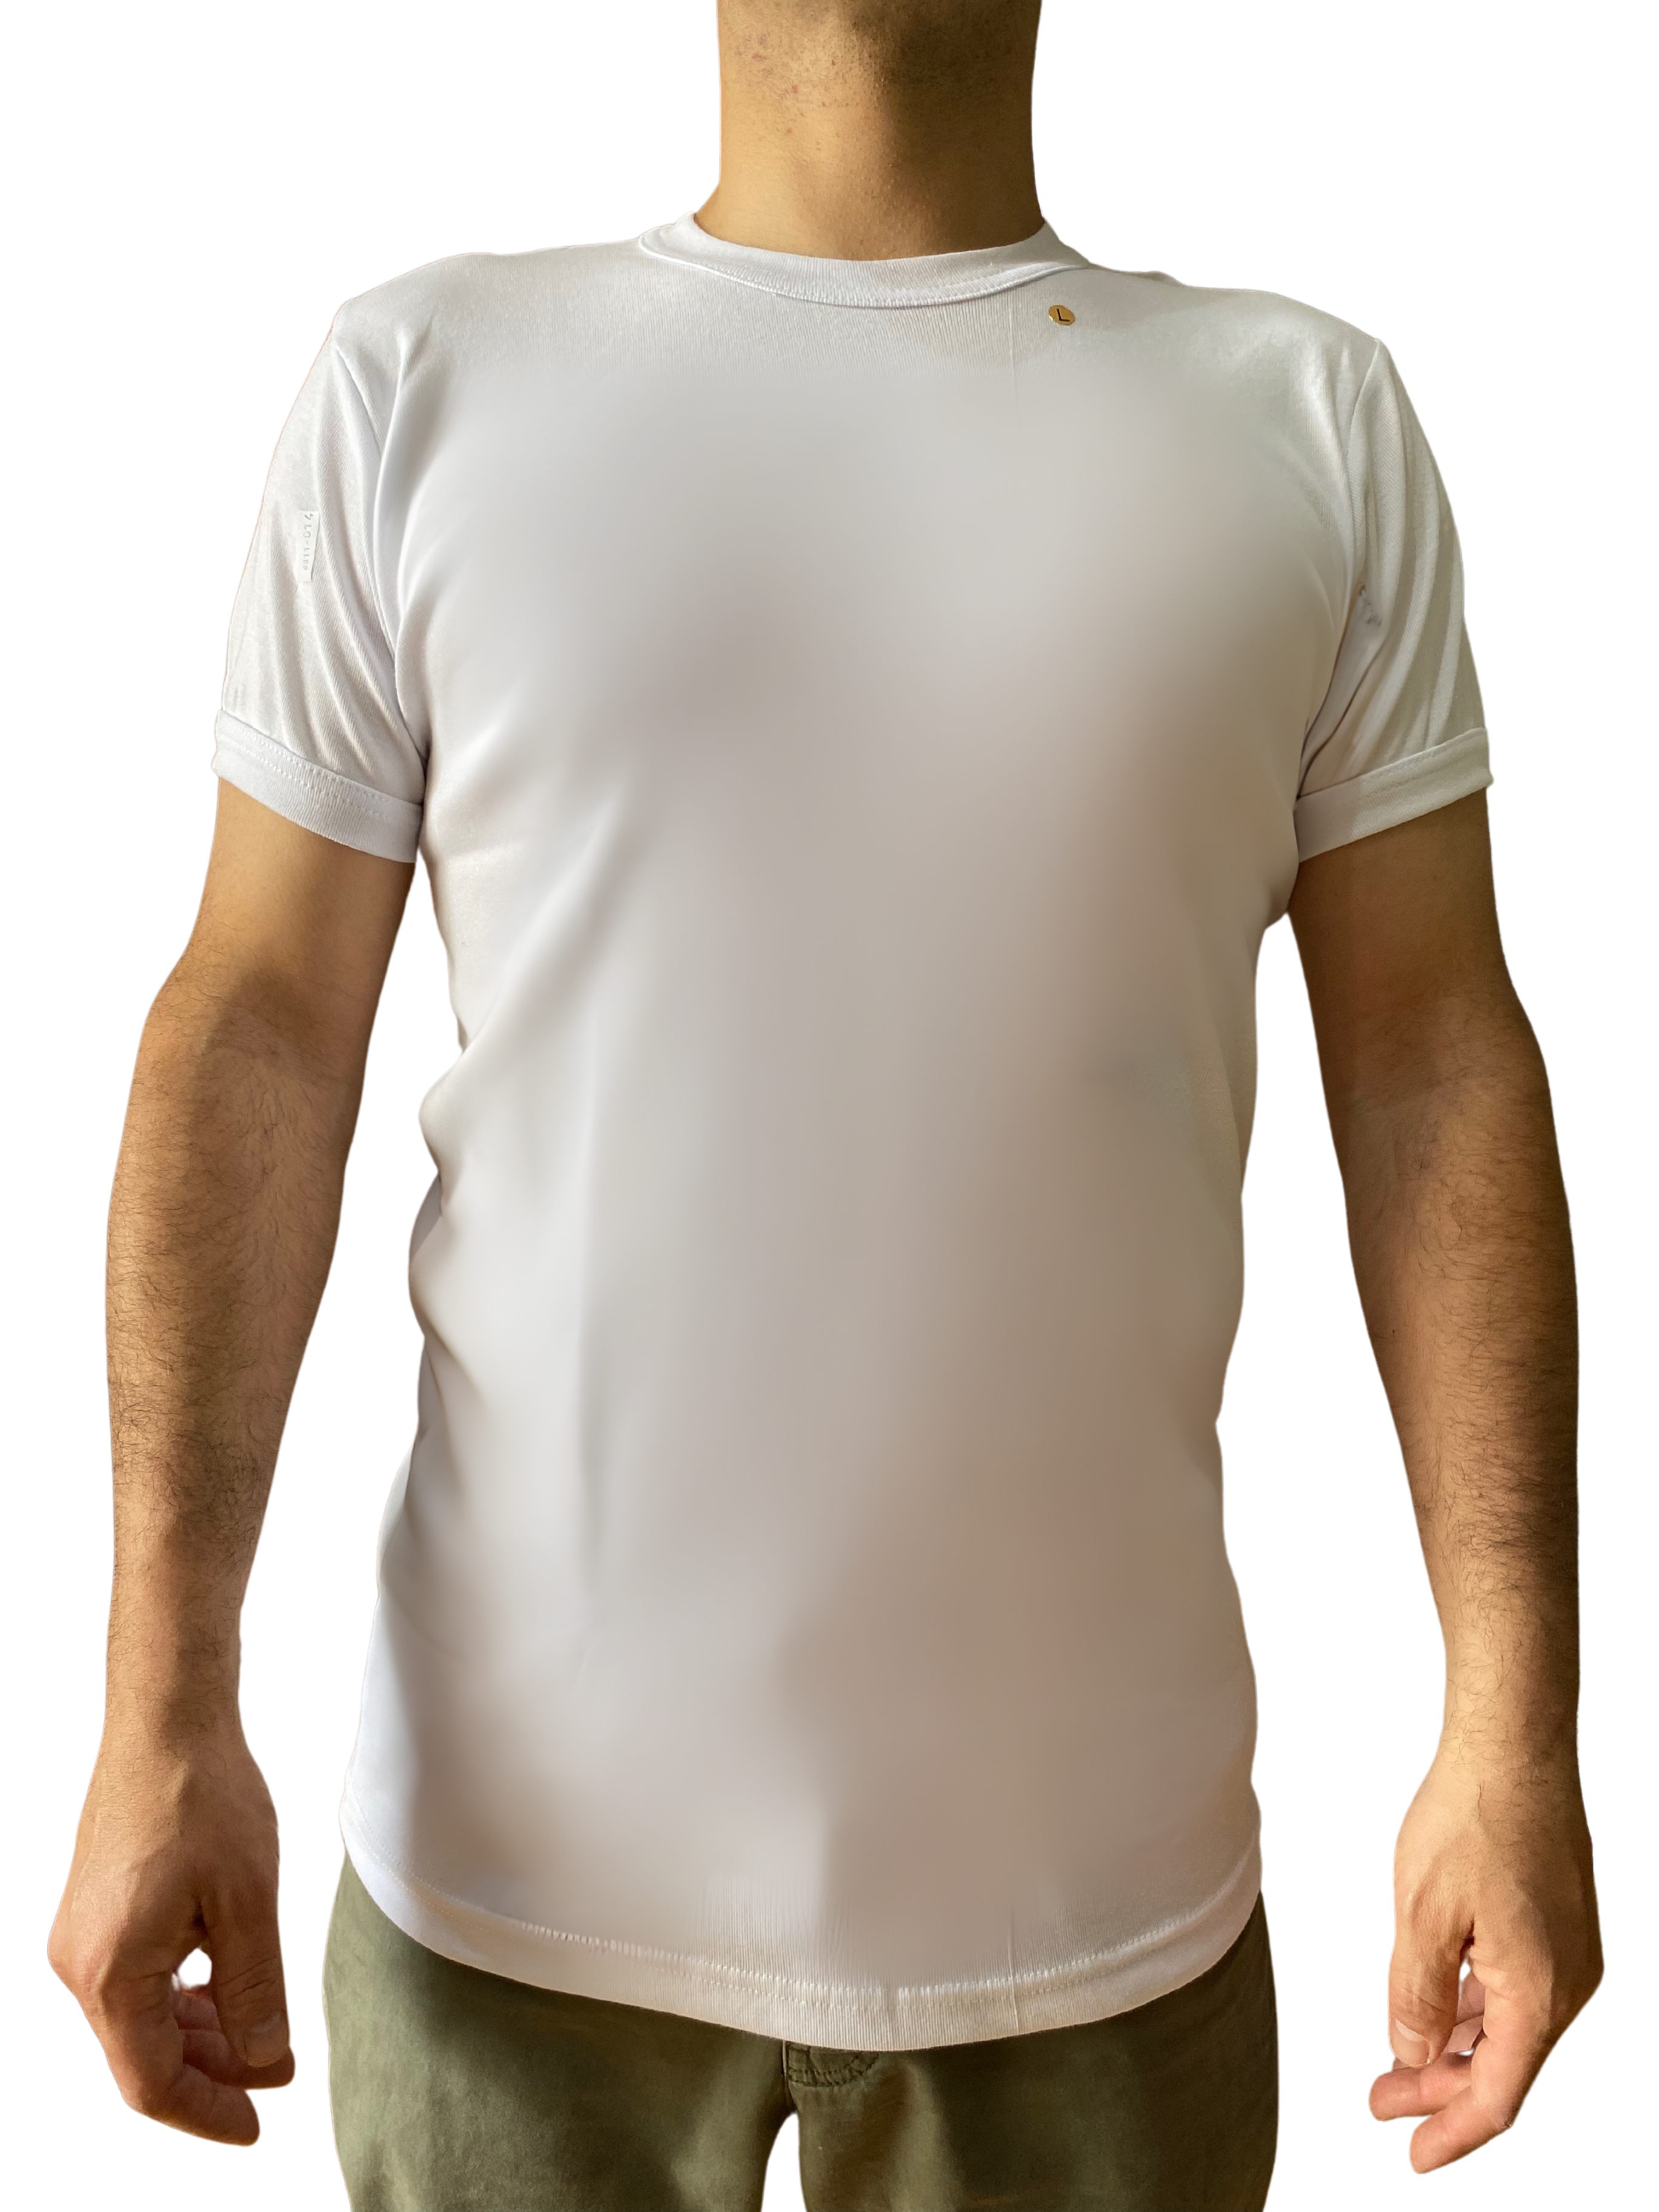 Camiseta Tipo Polera Blanca Algodón Unisex Carabineros